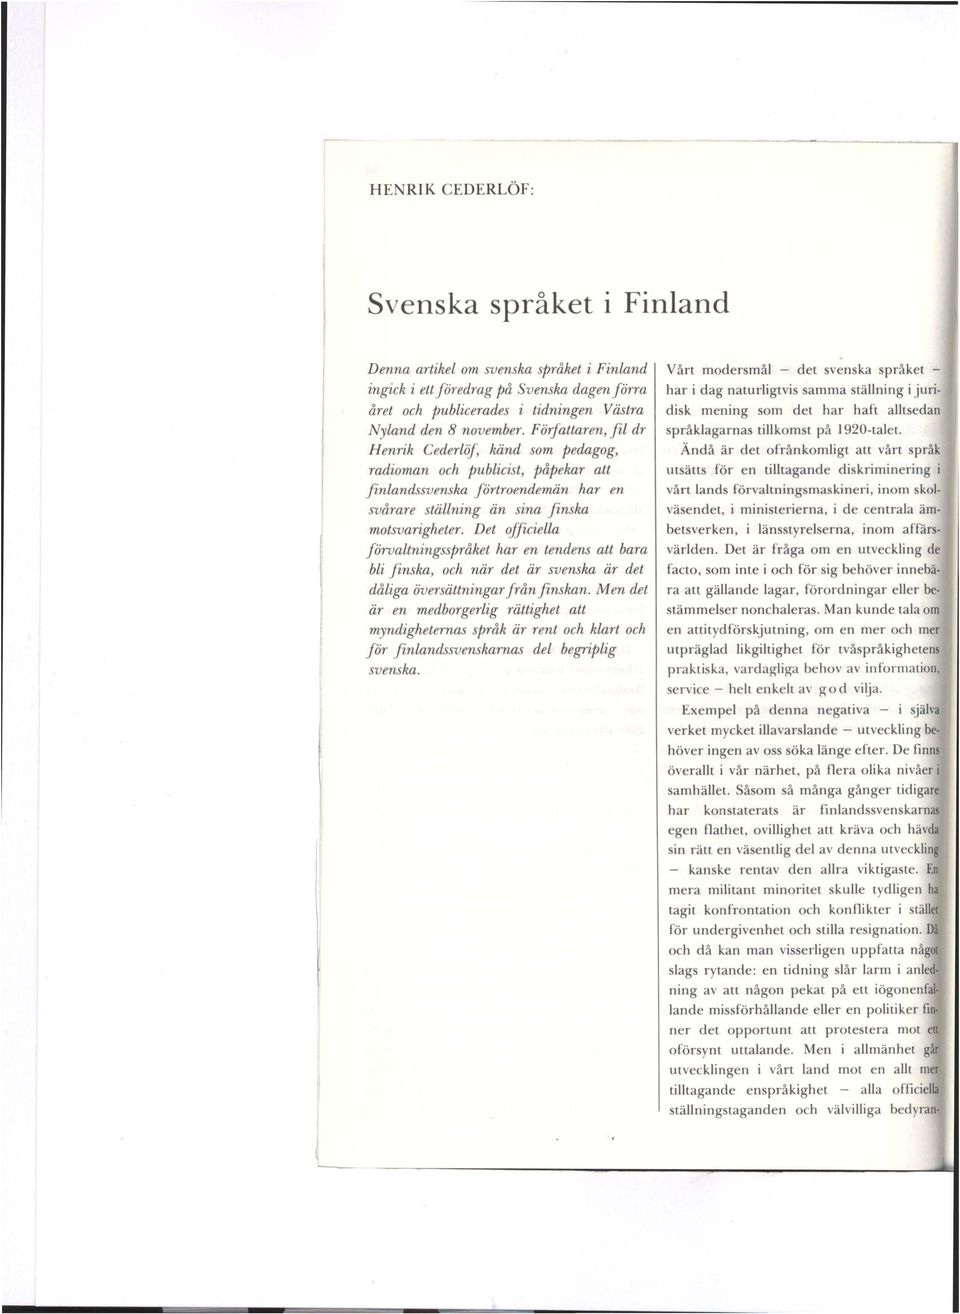 Det officiella förvaltningsspråket har en tendens att bara bli finska, och när det är svenska är det dåliga översättningar från finskan.